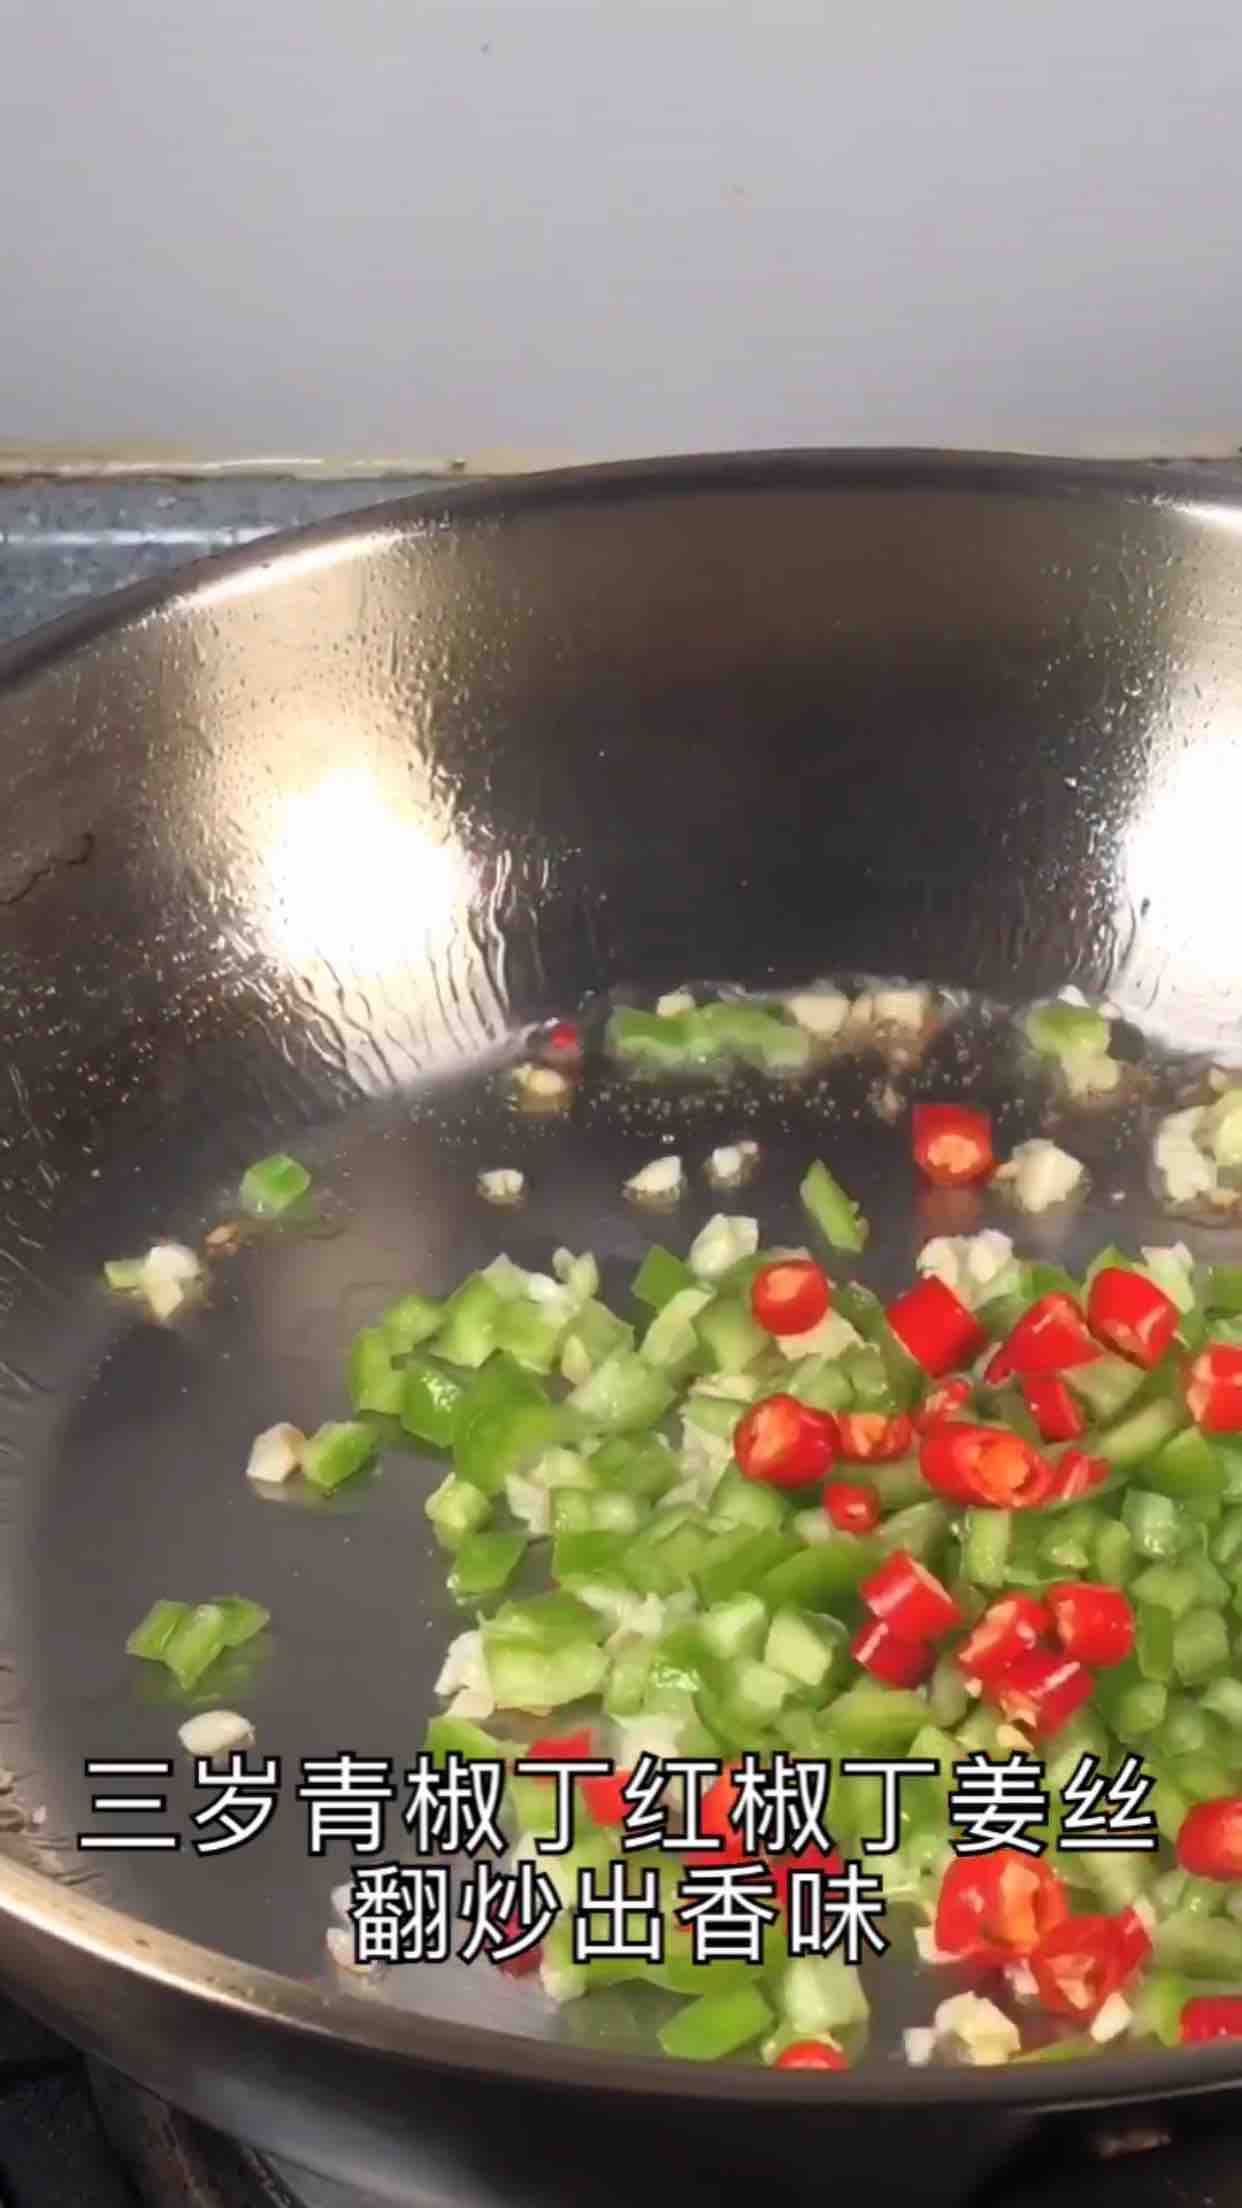 Salt and Pepper Prawns recipe